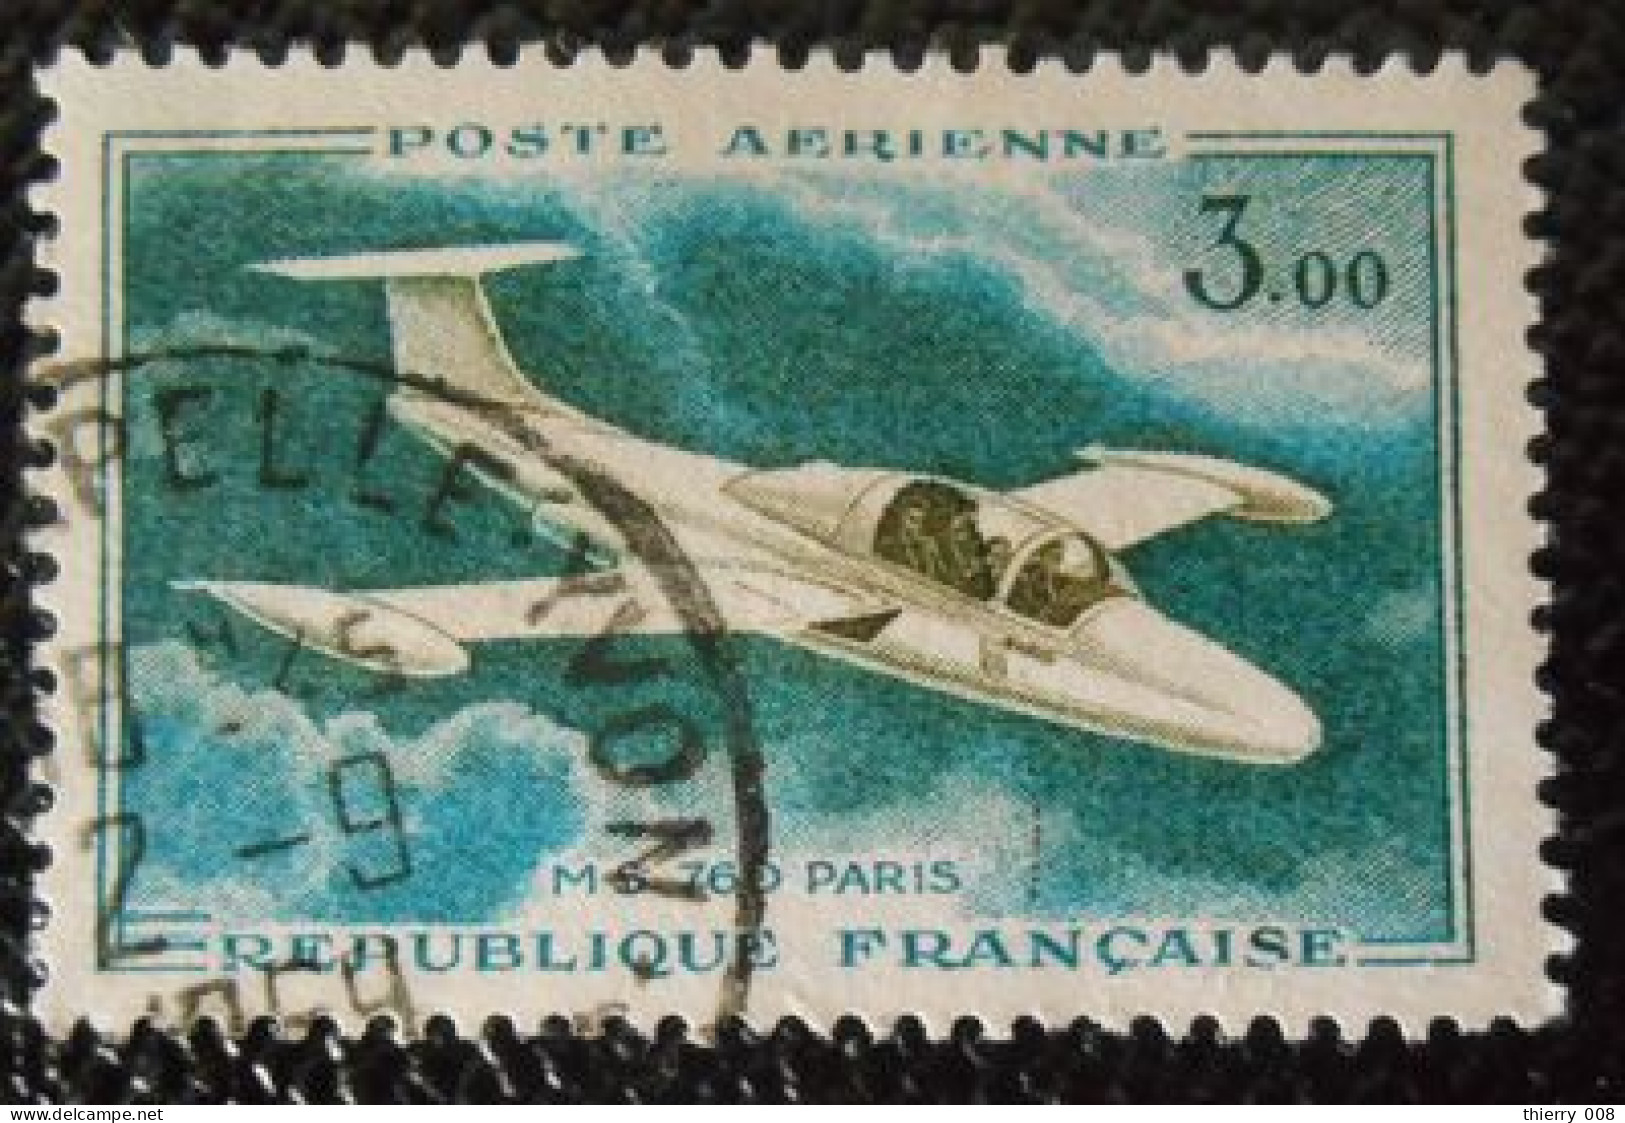 France 1960 1964 Poste Aérienne PA 39 Prototypes Morane Saulnier 760 Paris  Oblitéré - 1960-.... Usati